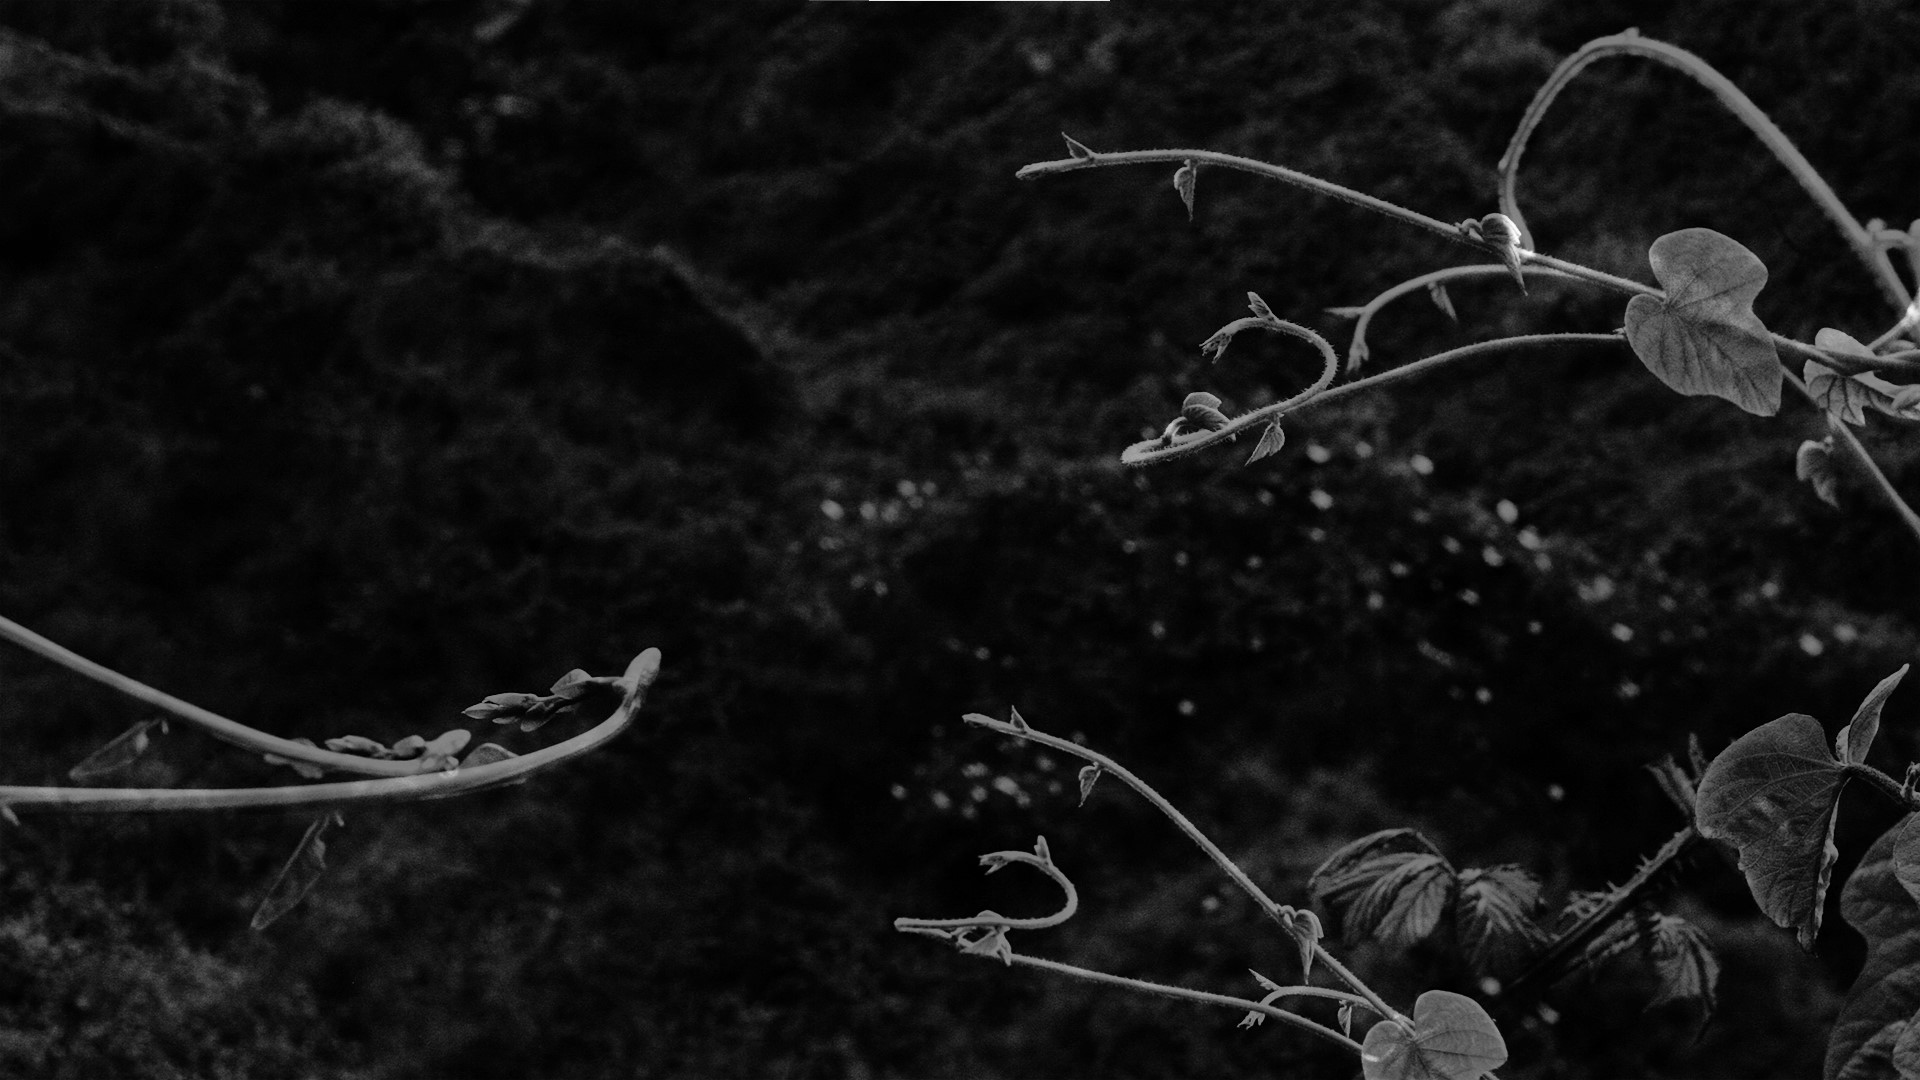 manto vegetal, 2015-2019. Vídeo em preto e branco (frame), 4'05''.